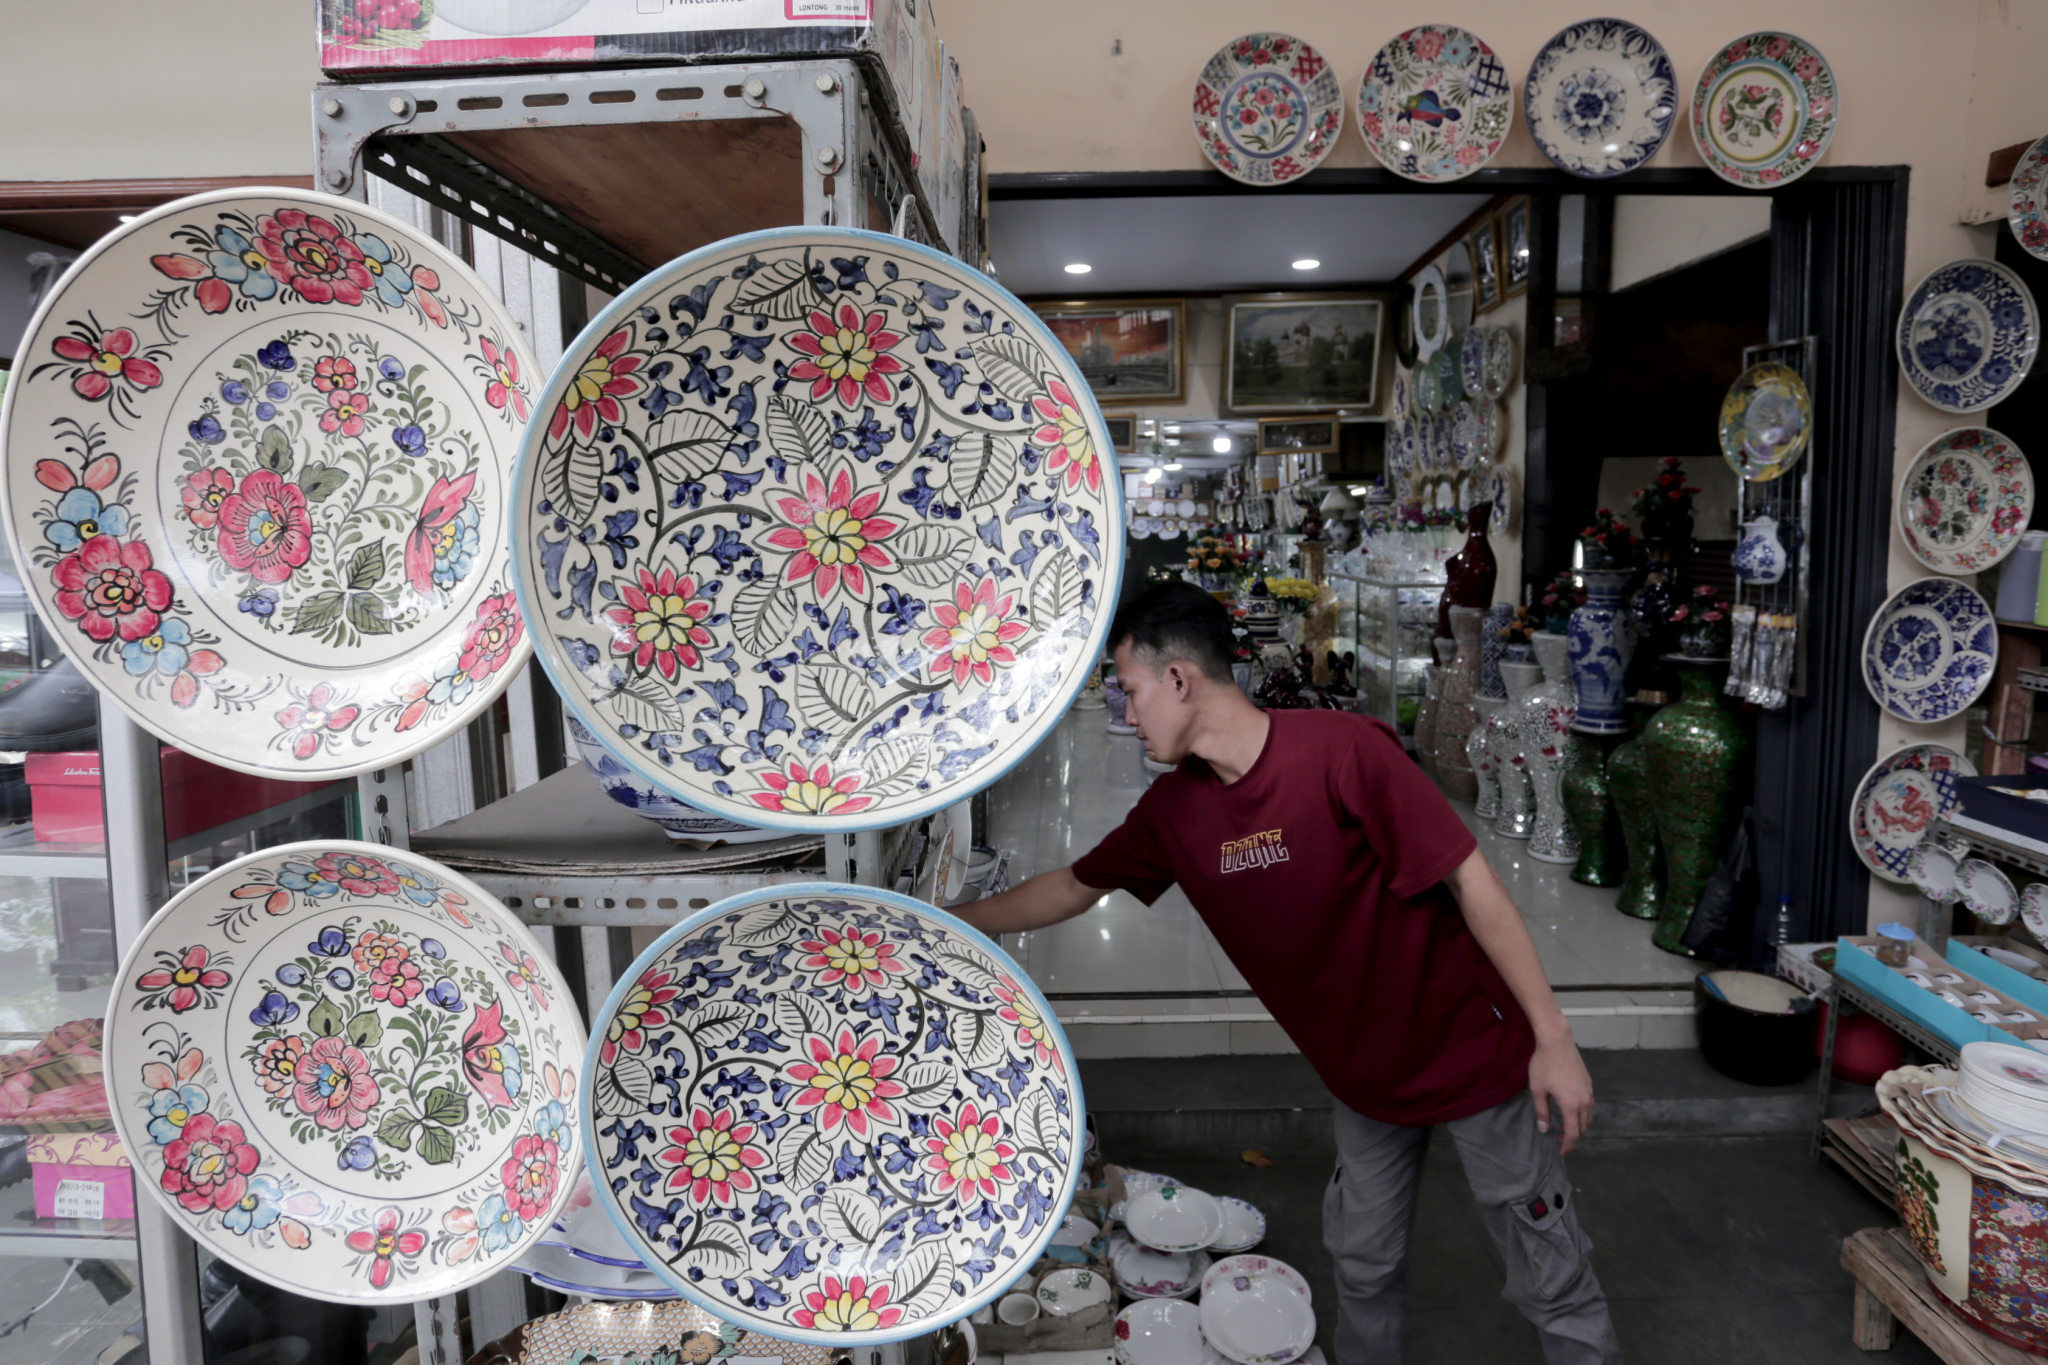 Calon pembeli melihat produk keramik yang dijual di kios kerajinan keramik kawasan Tanjung Priuk, Jakarta Utara, Rabu, 15 September 2021. Foto: Ismail Pohan/TrenAsia